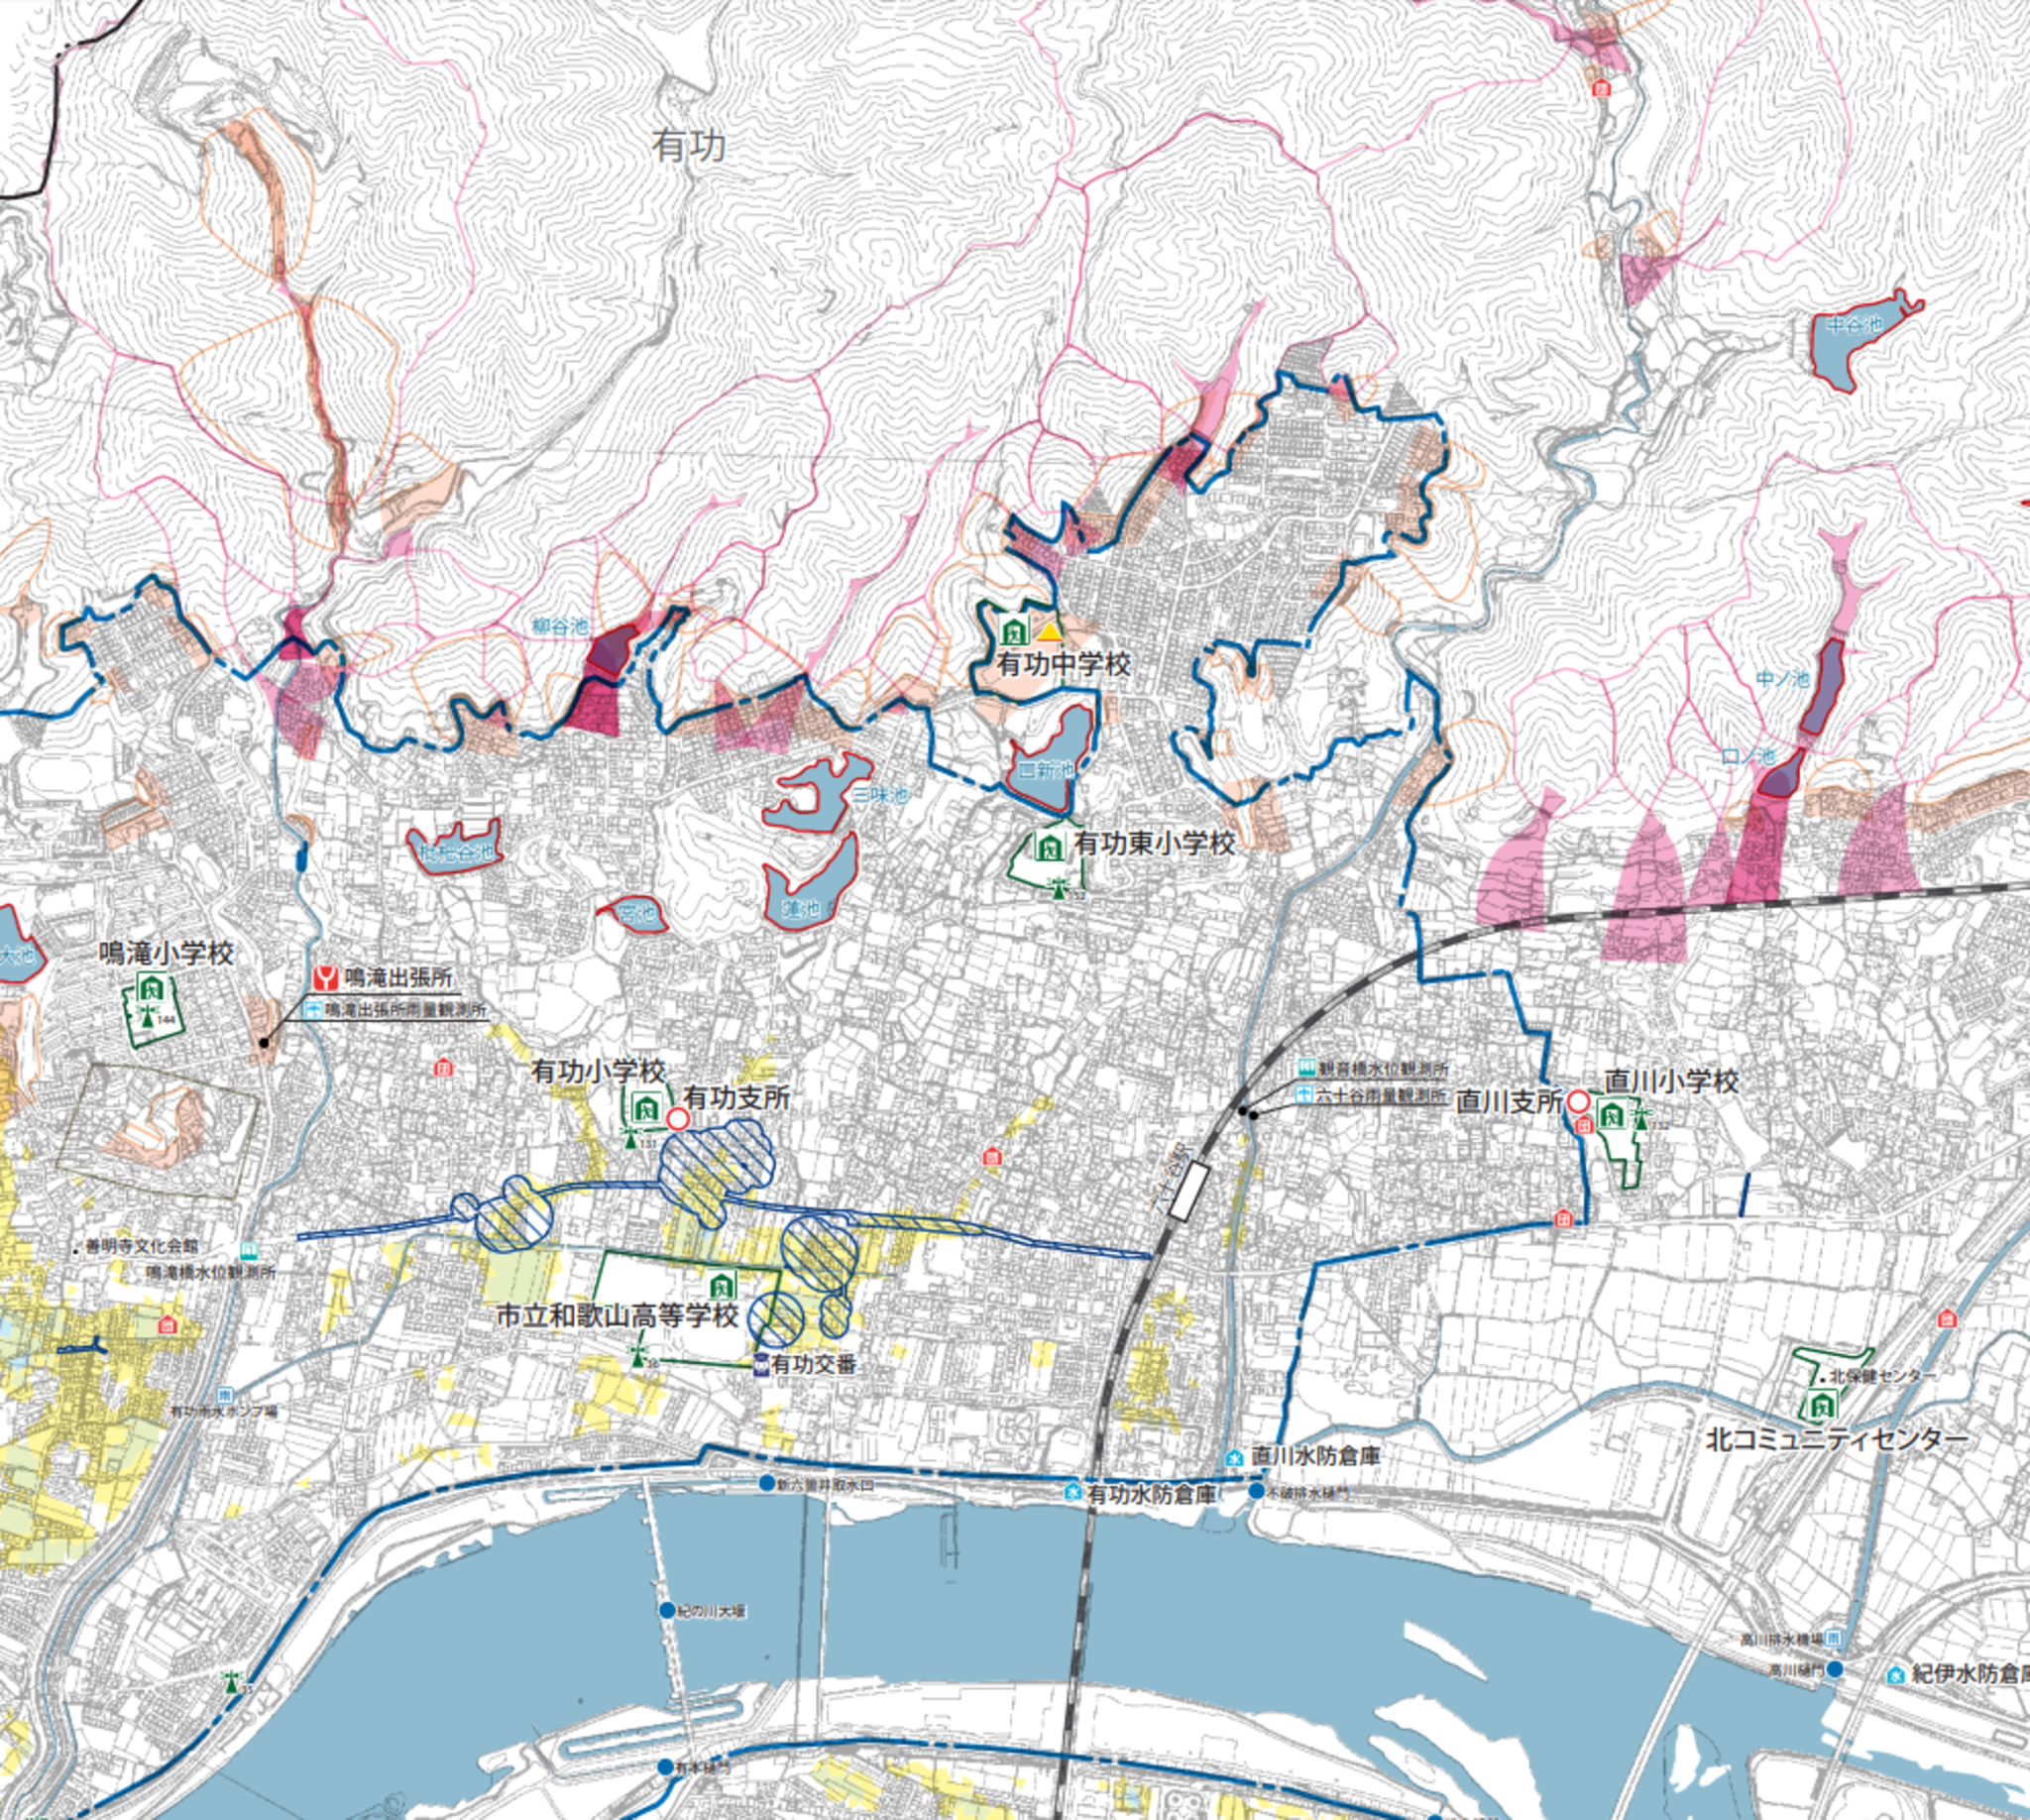 和歌山市六十谷の家 土地を 売る 買う 査定する にあたりハザードマップを確認する